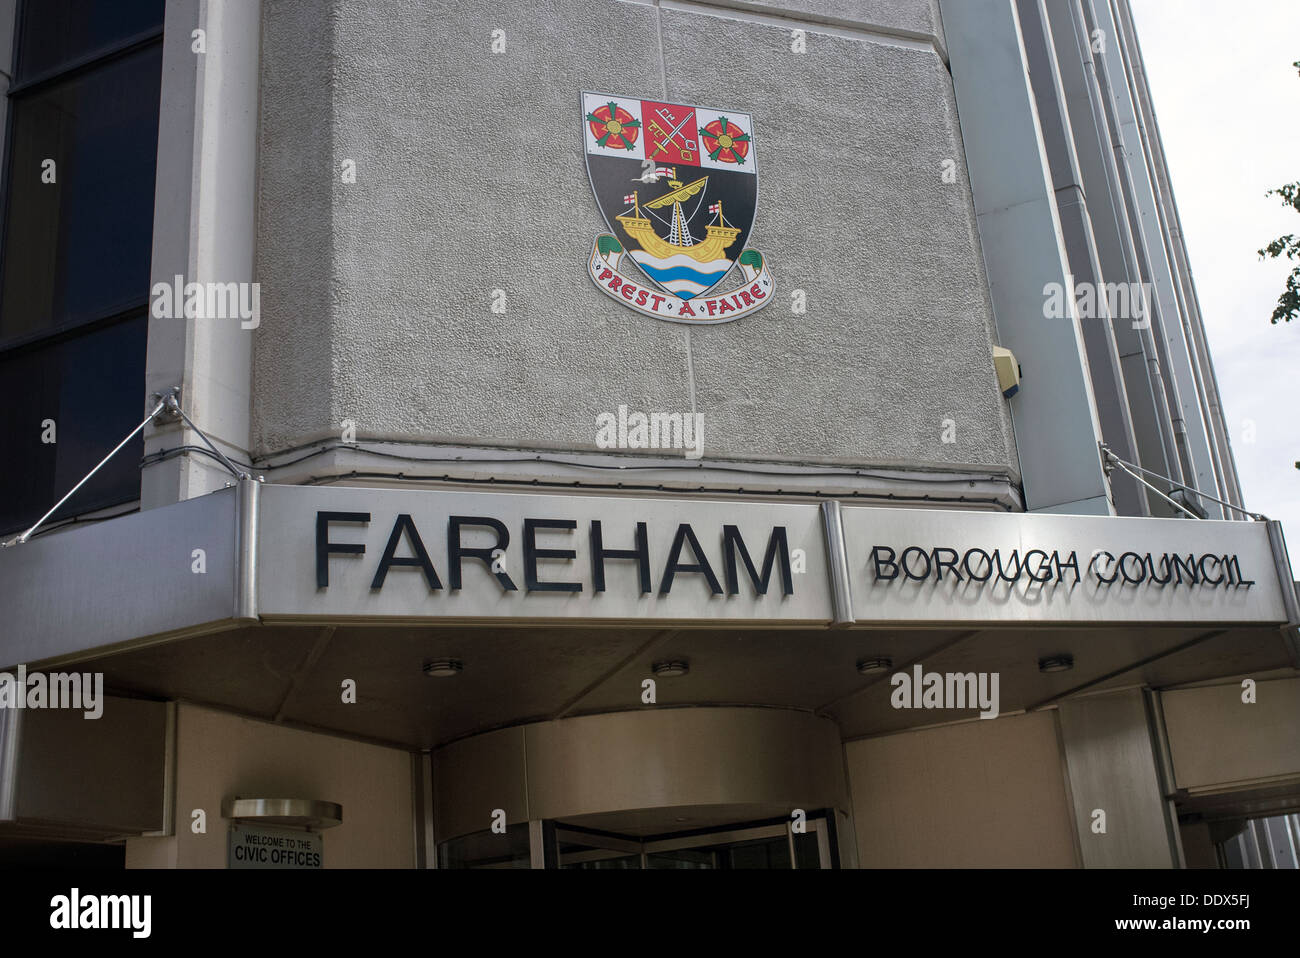 Fareham Borough Council building Stock Photo